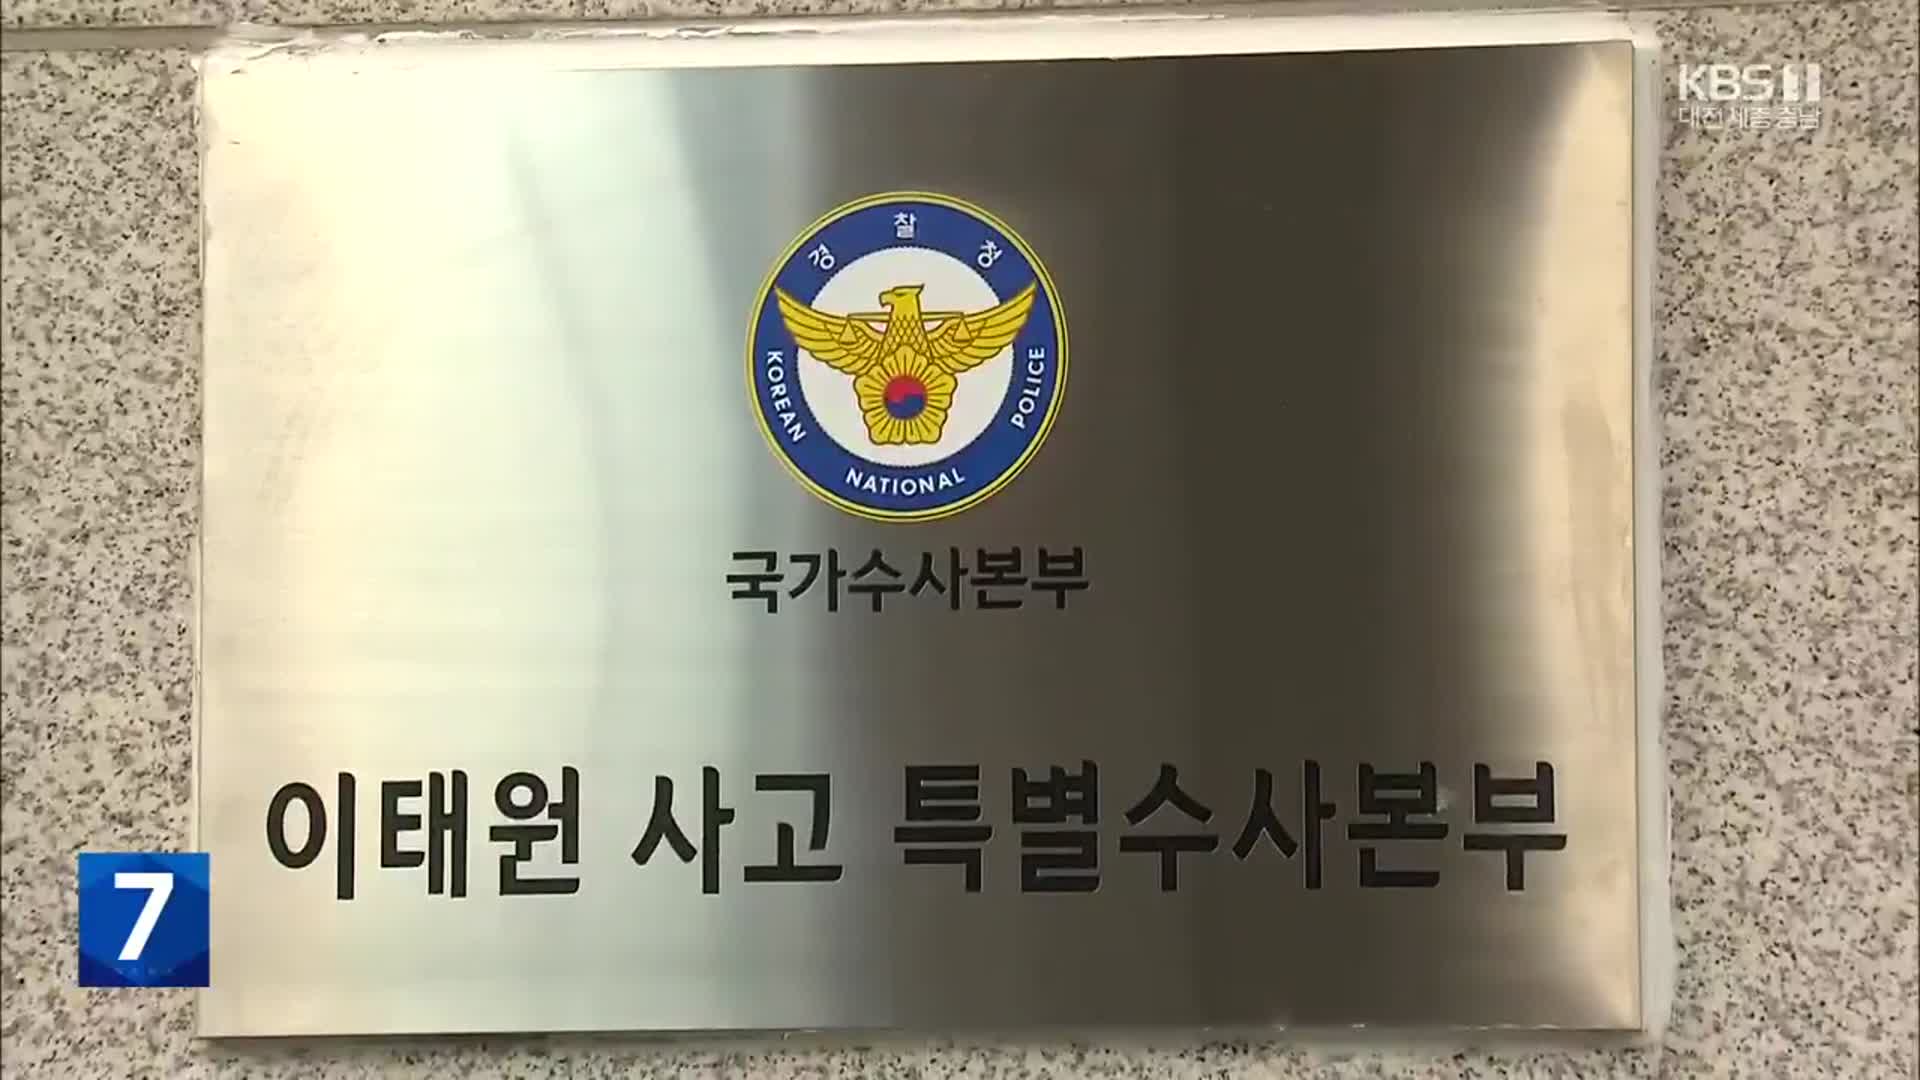 특수본, 이임재 전 용산서장·최성범 소방서장 소환